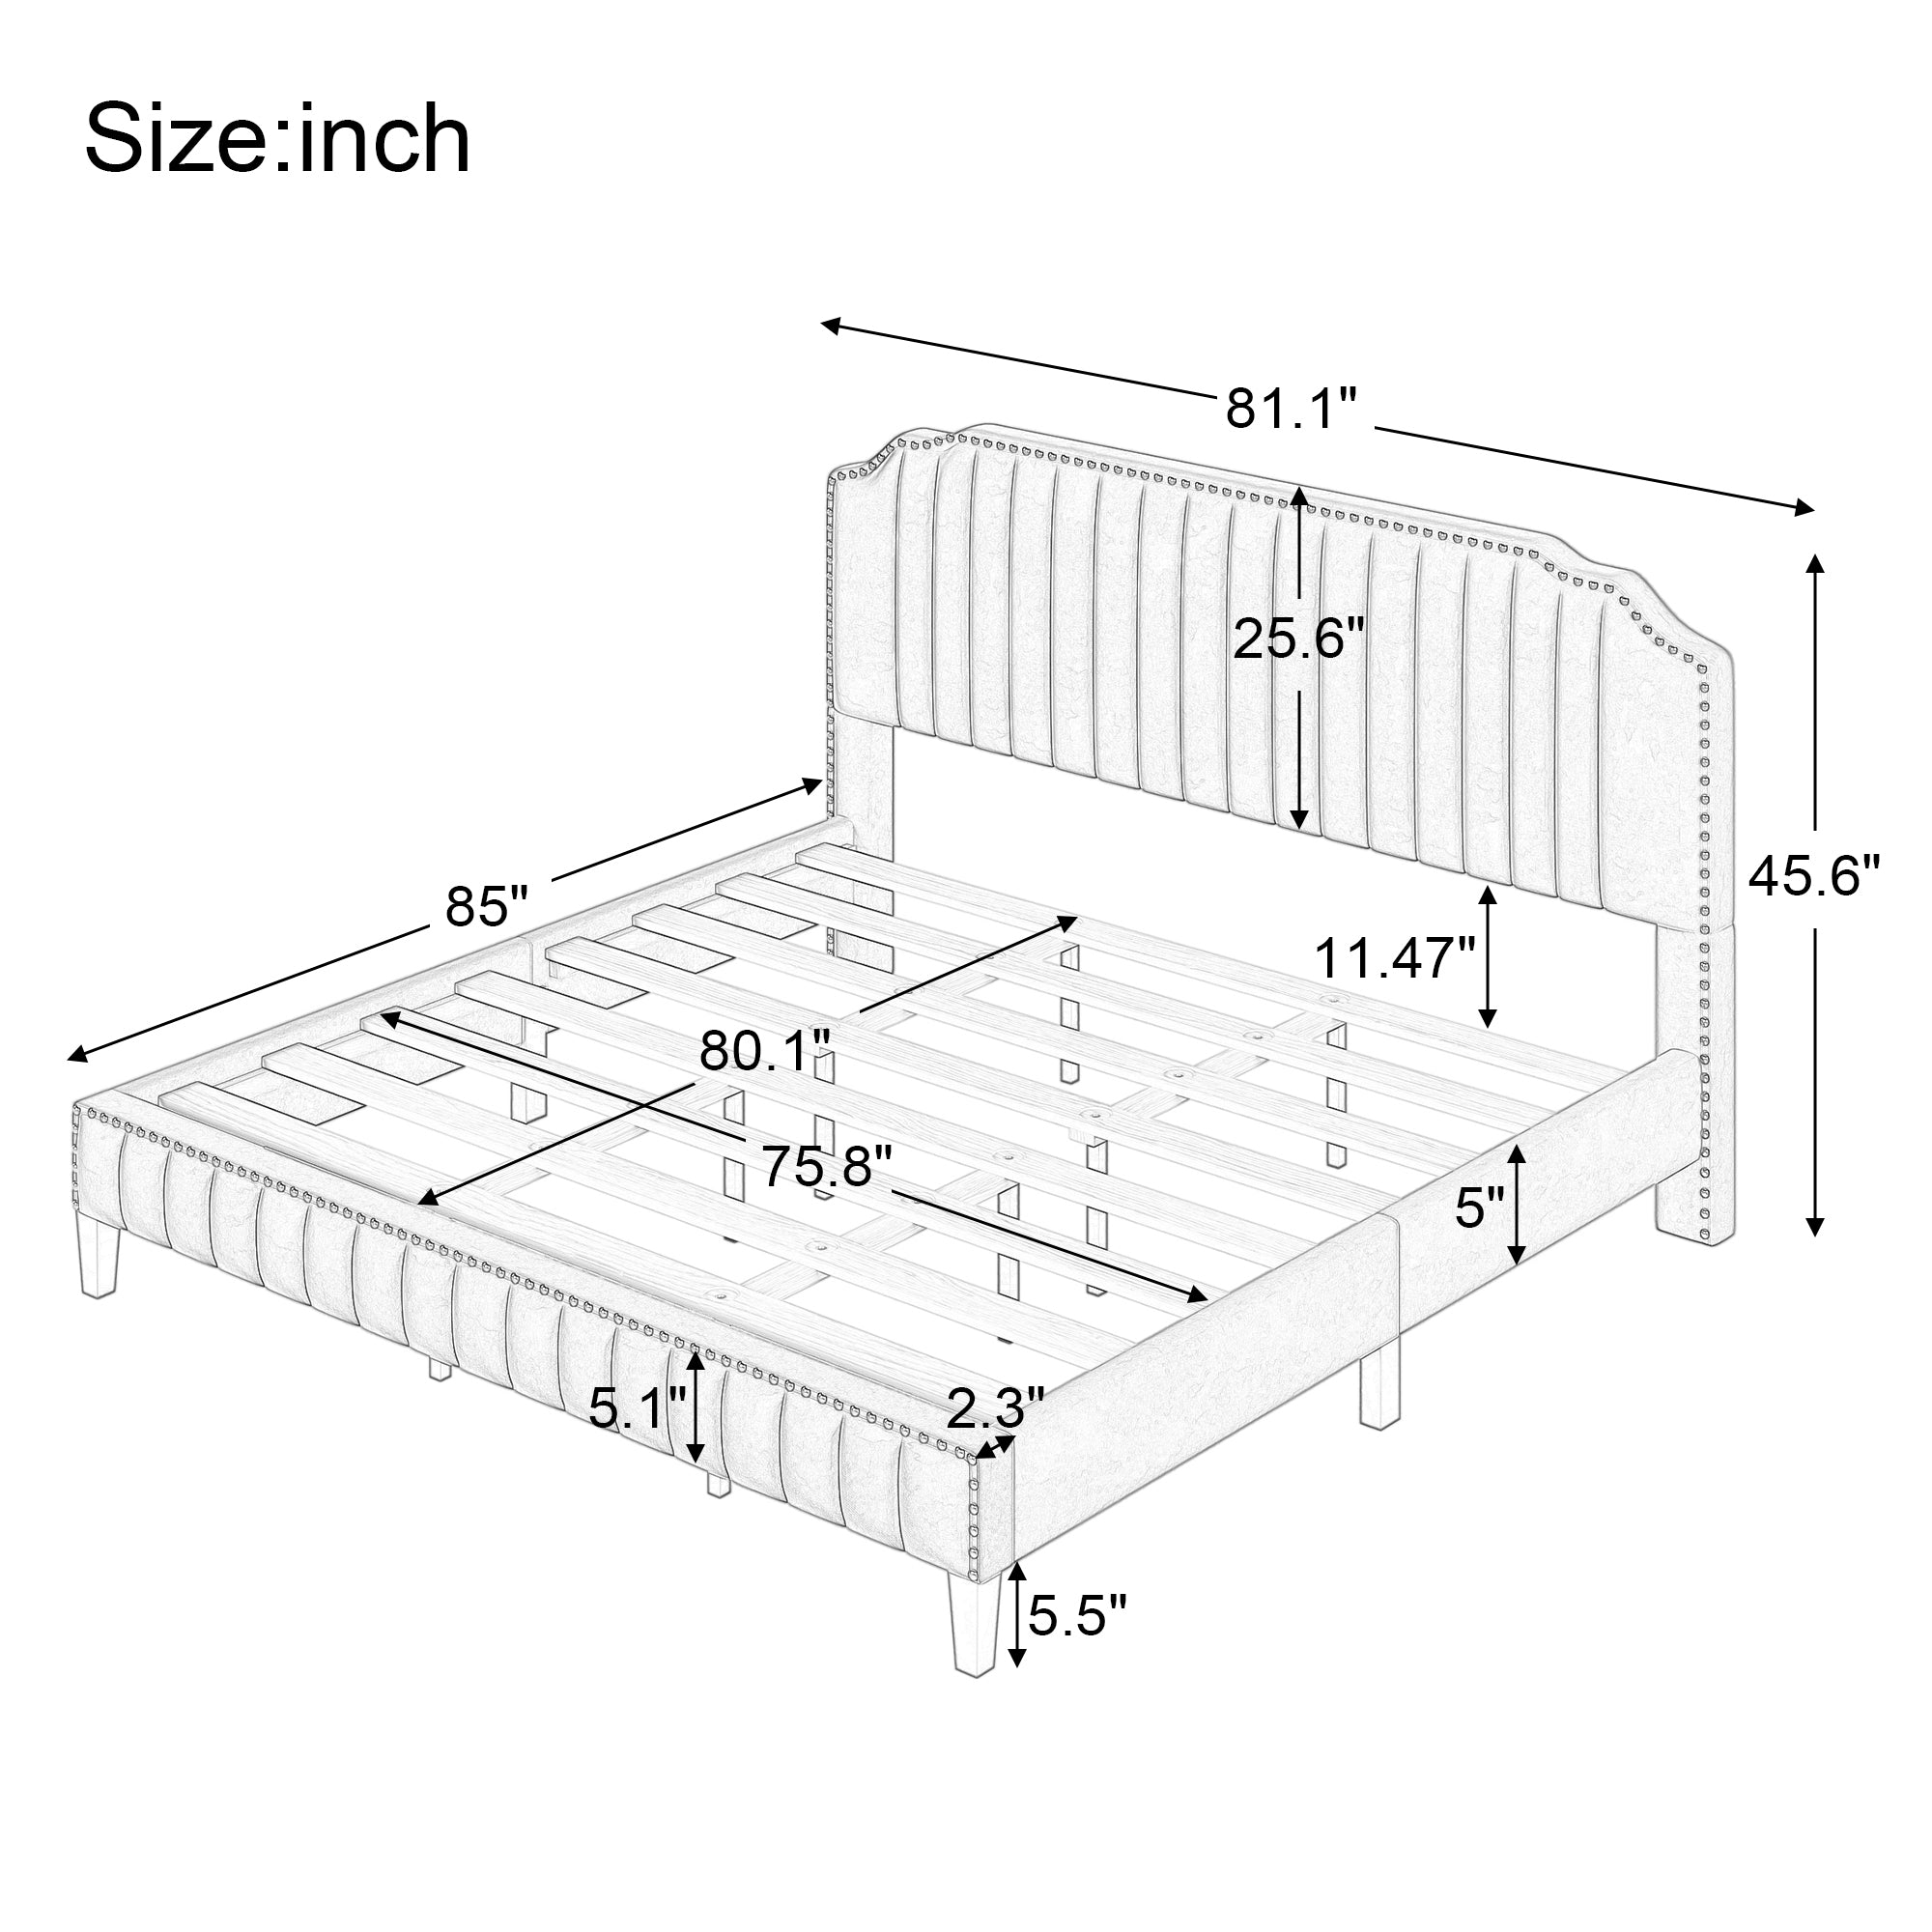 Modern Linen Curved Upholstered Platform Bed , Solid Wood Frame , Nailhead Trim, Cream (King)